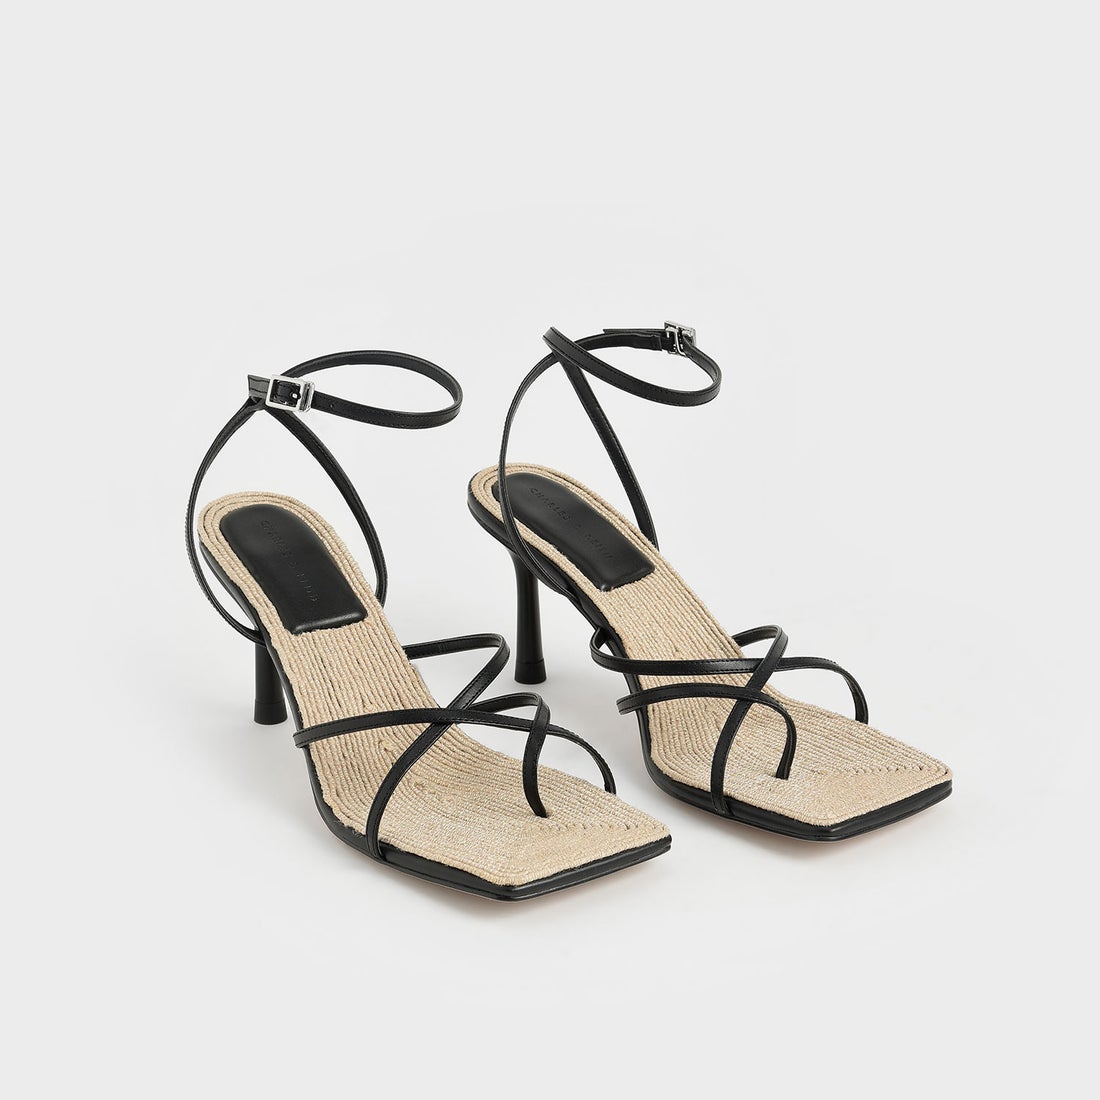 アンクルストラップ スティレットサンダル / Ankle Strap Stiletto Sandals （Black）